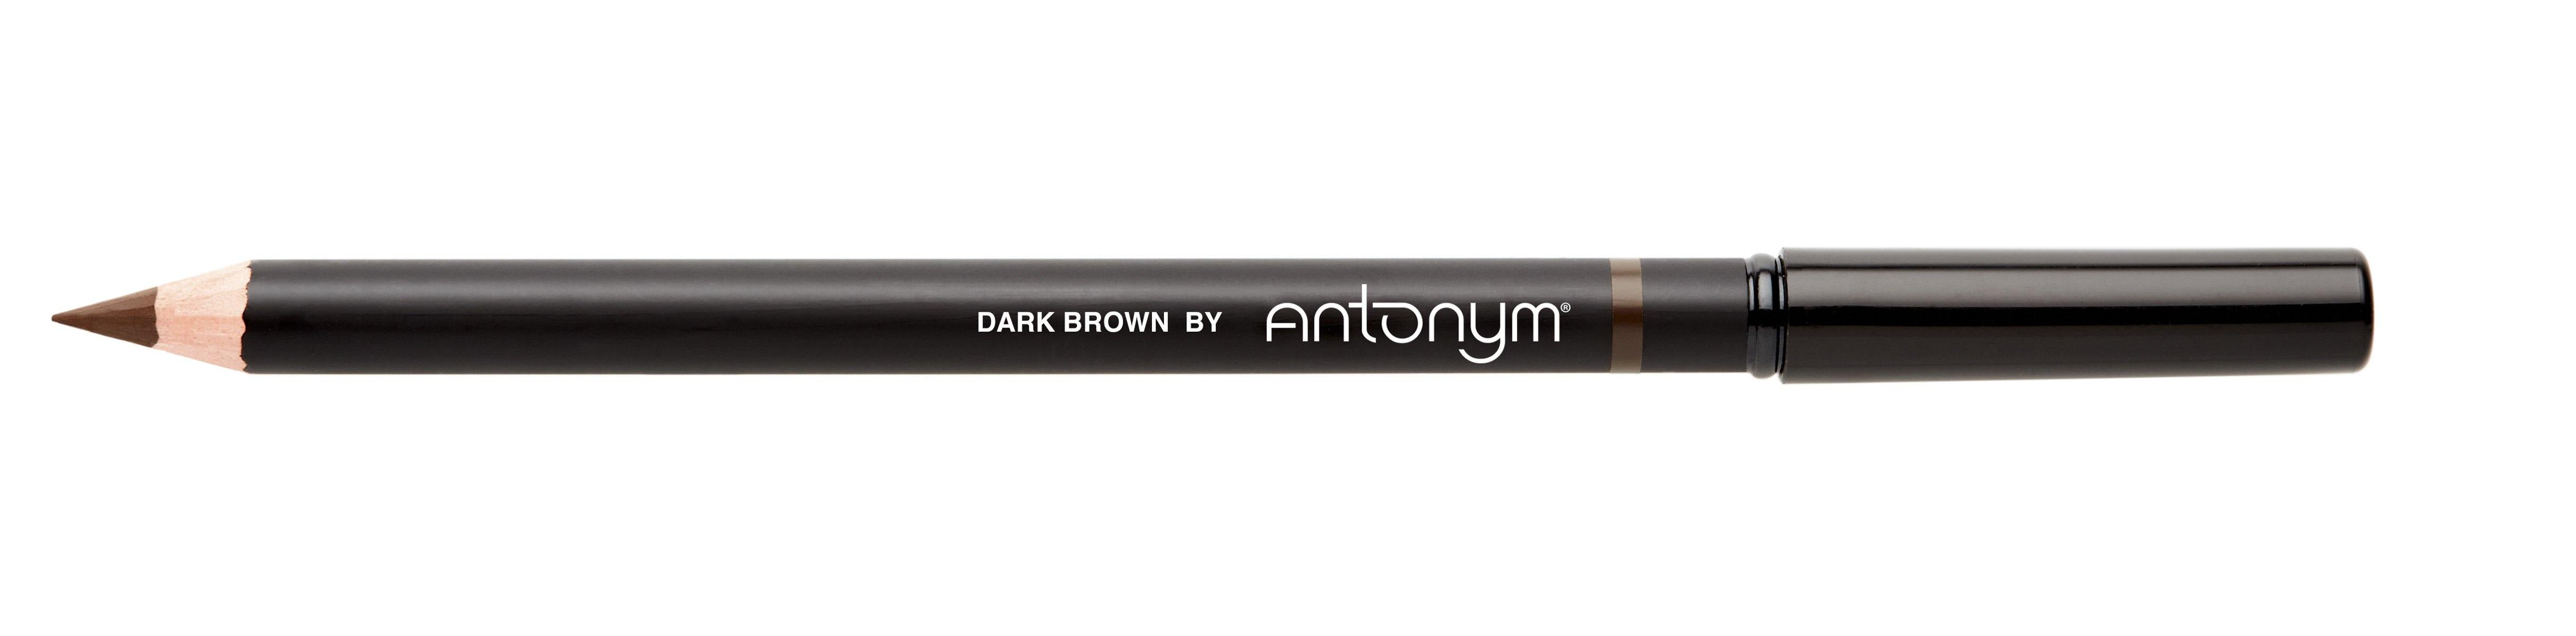 Eyebrow Pencil in Dark Brown - Antonym Cosmetics